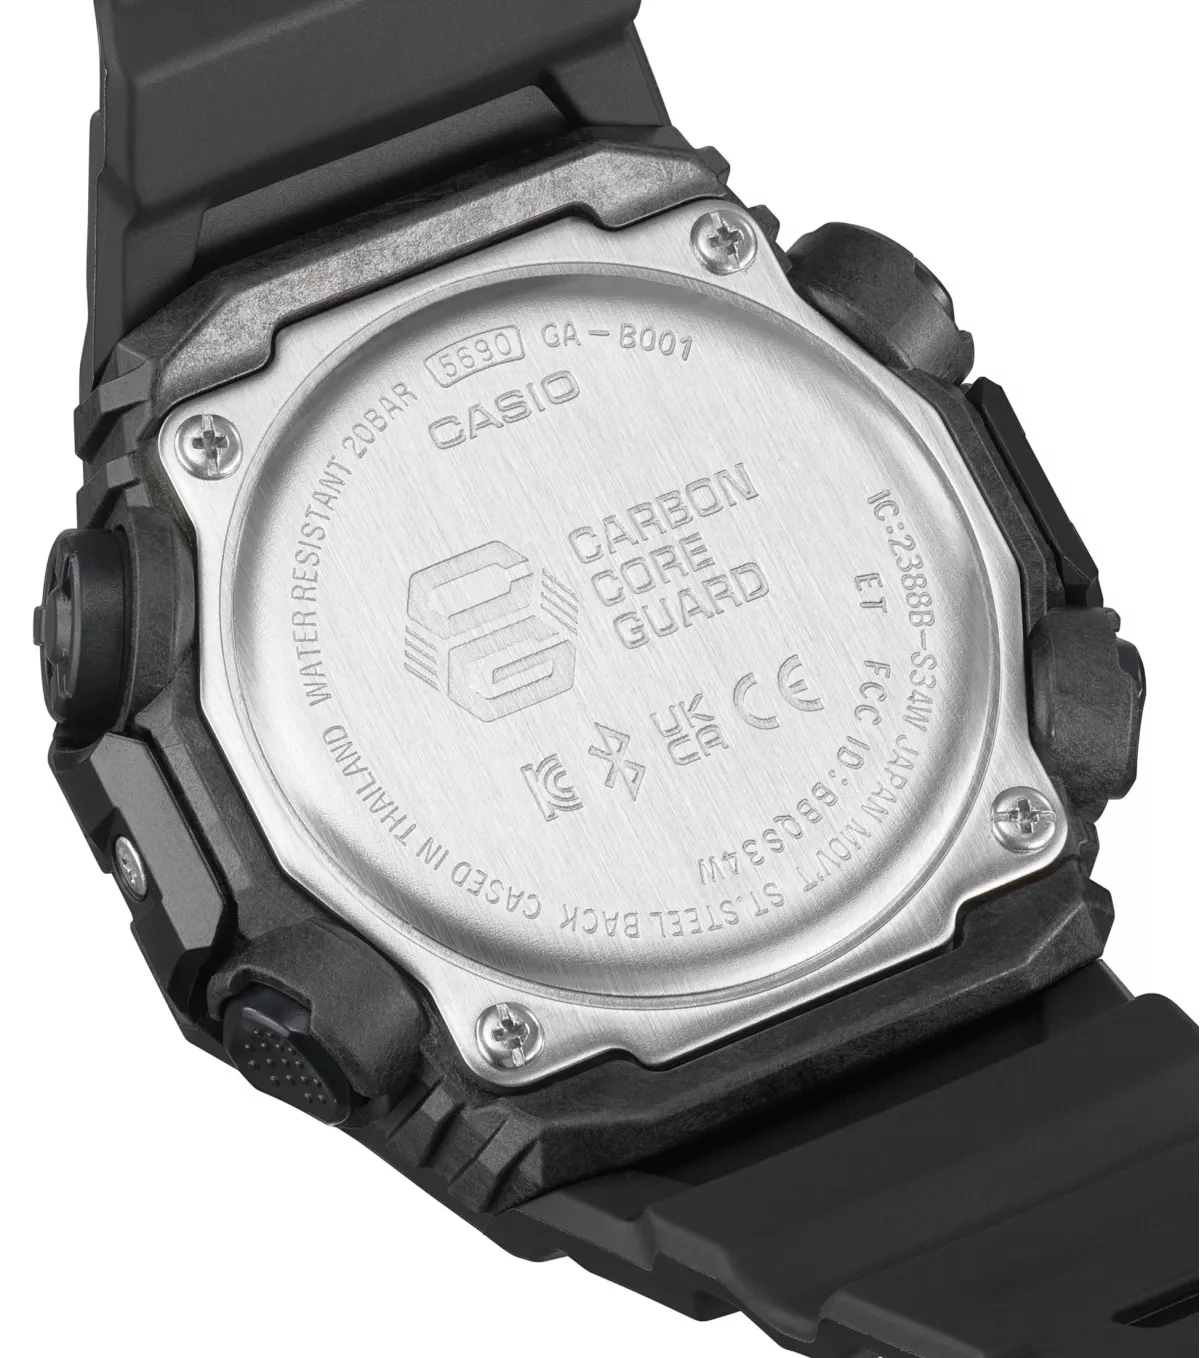 CASIO G-SHOCK GA-B001-1AER Protection Schwarz Uhr